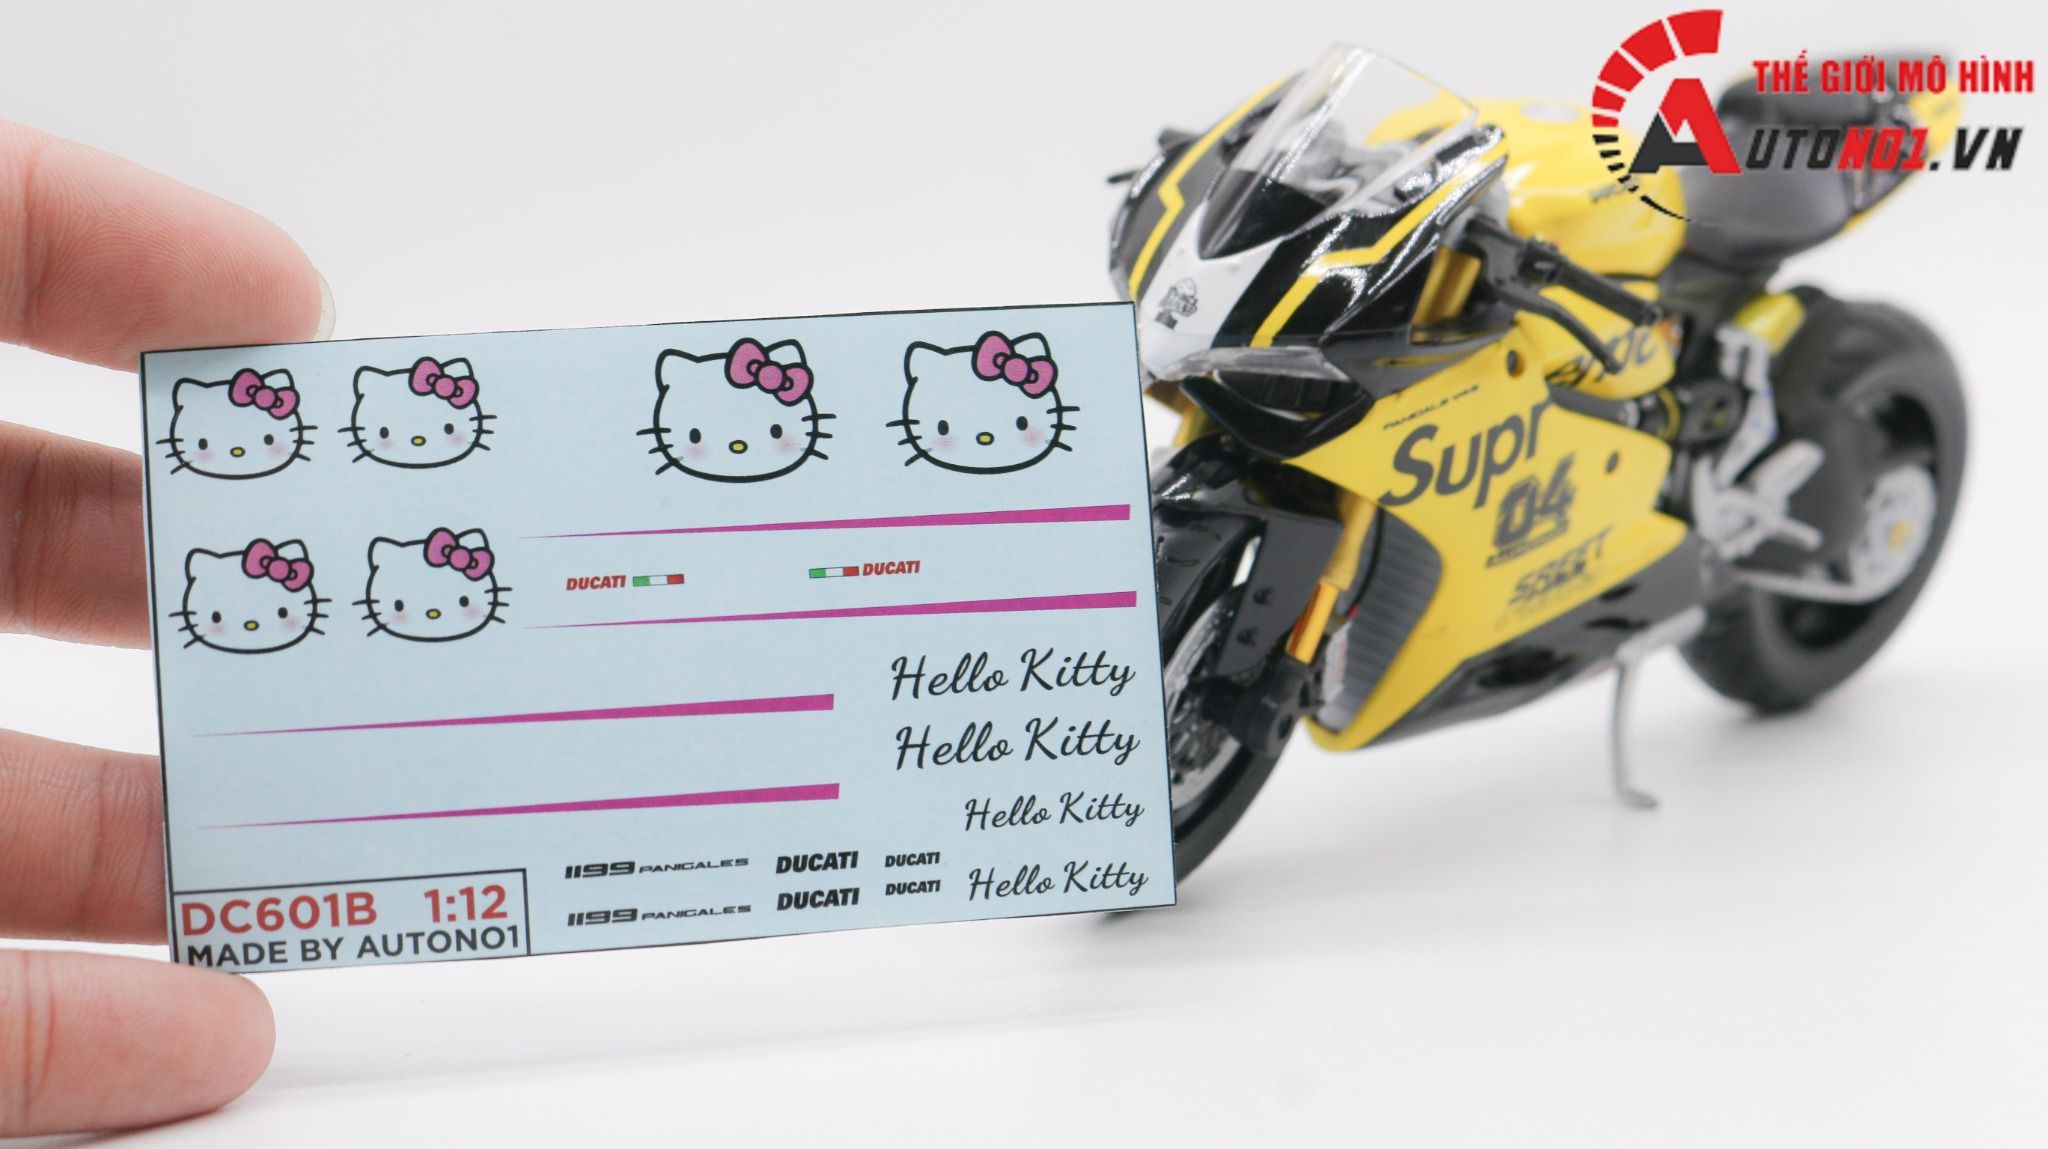  Decal nước độ Ducati 1199 Hello Kitty Pink White tỉ lệ 1:12 Autono1 DC601b 